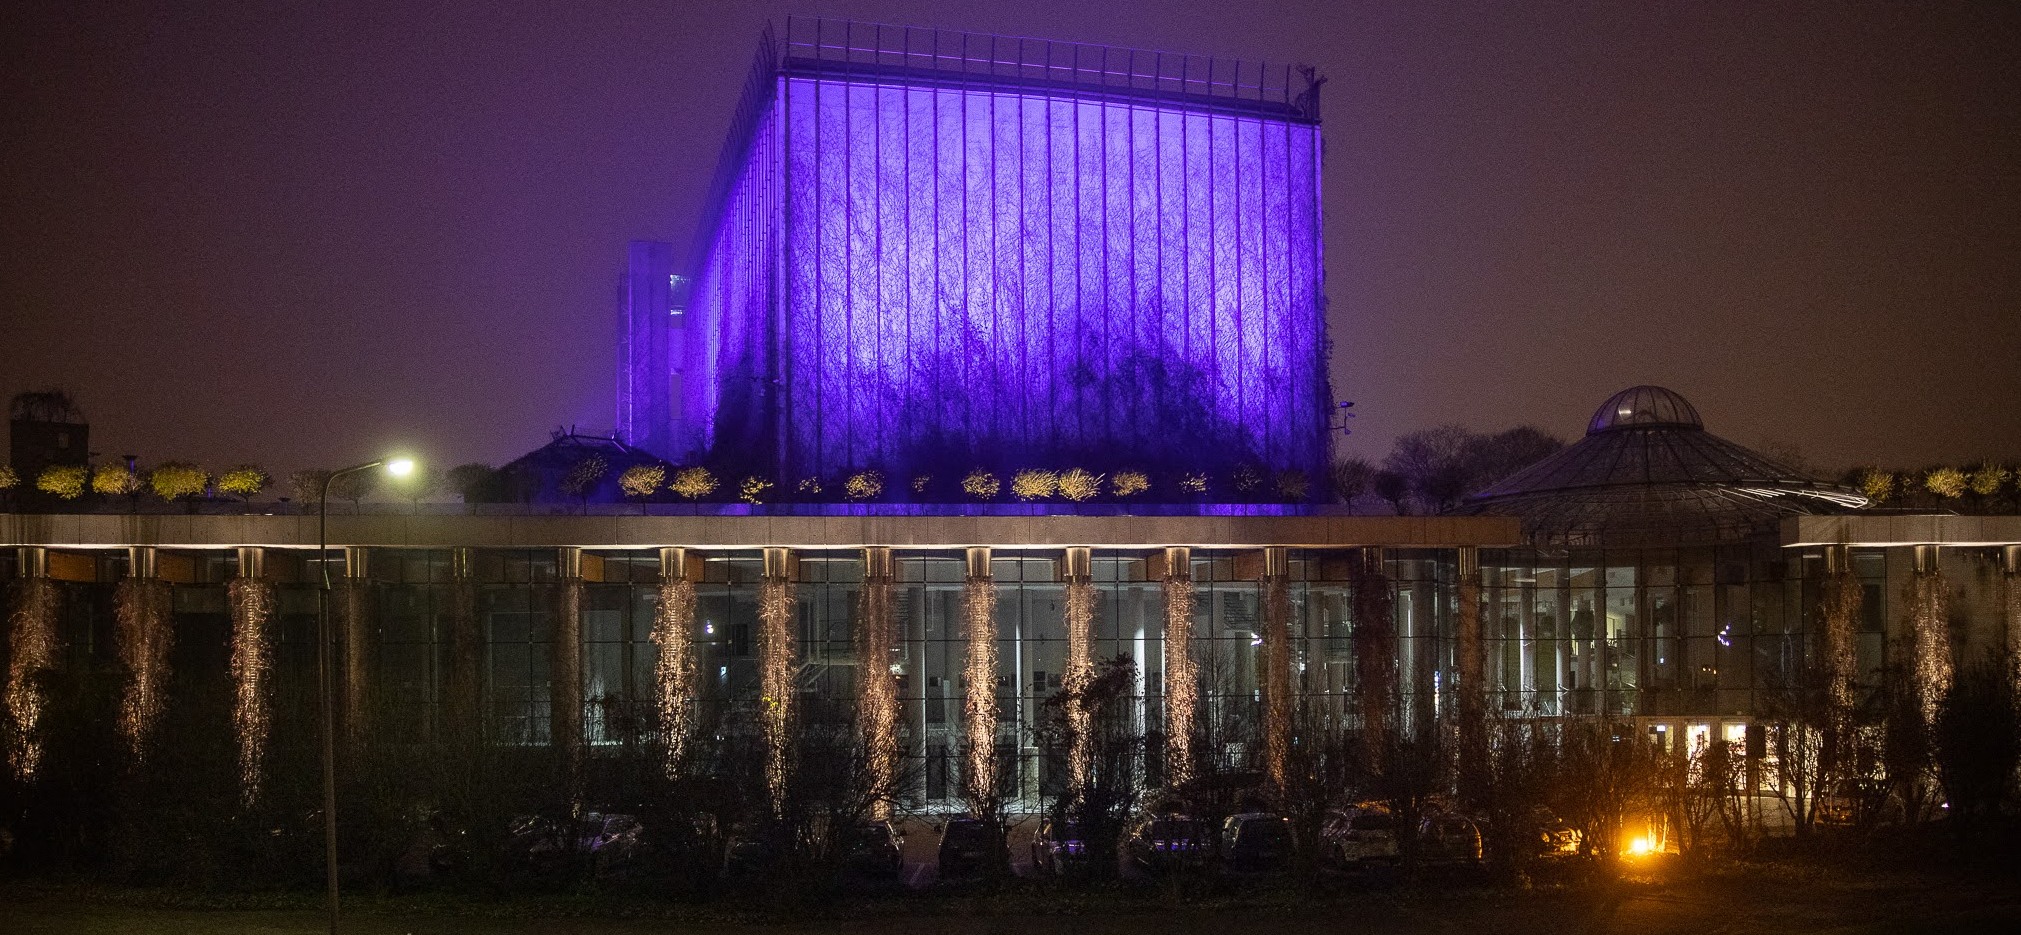 Gmach opery w Białymstoku podświetlony na fioletowo